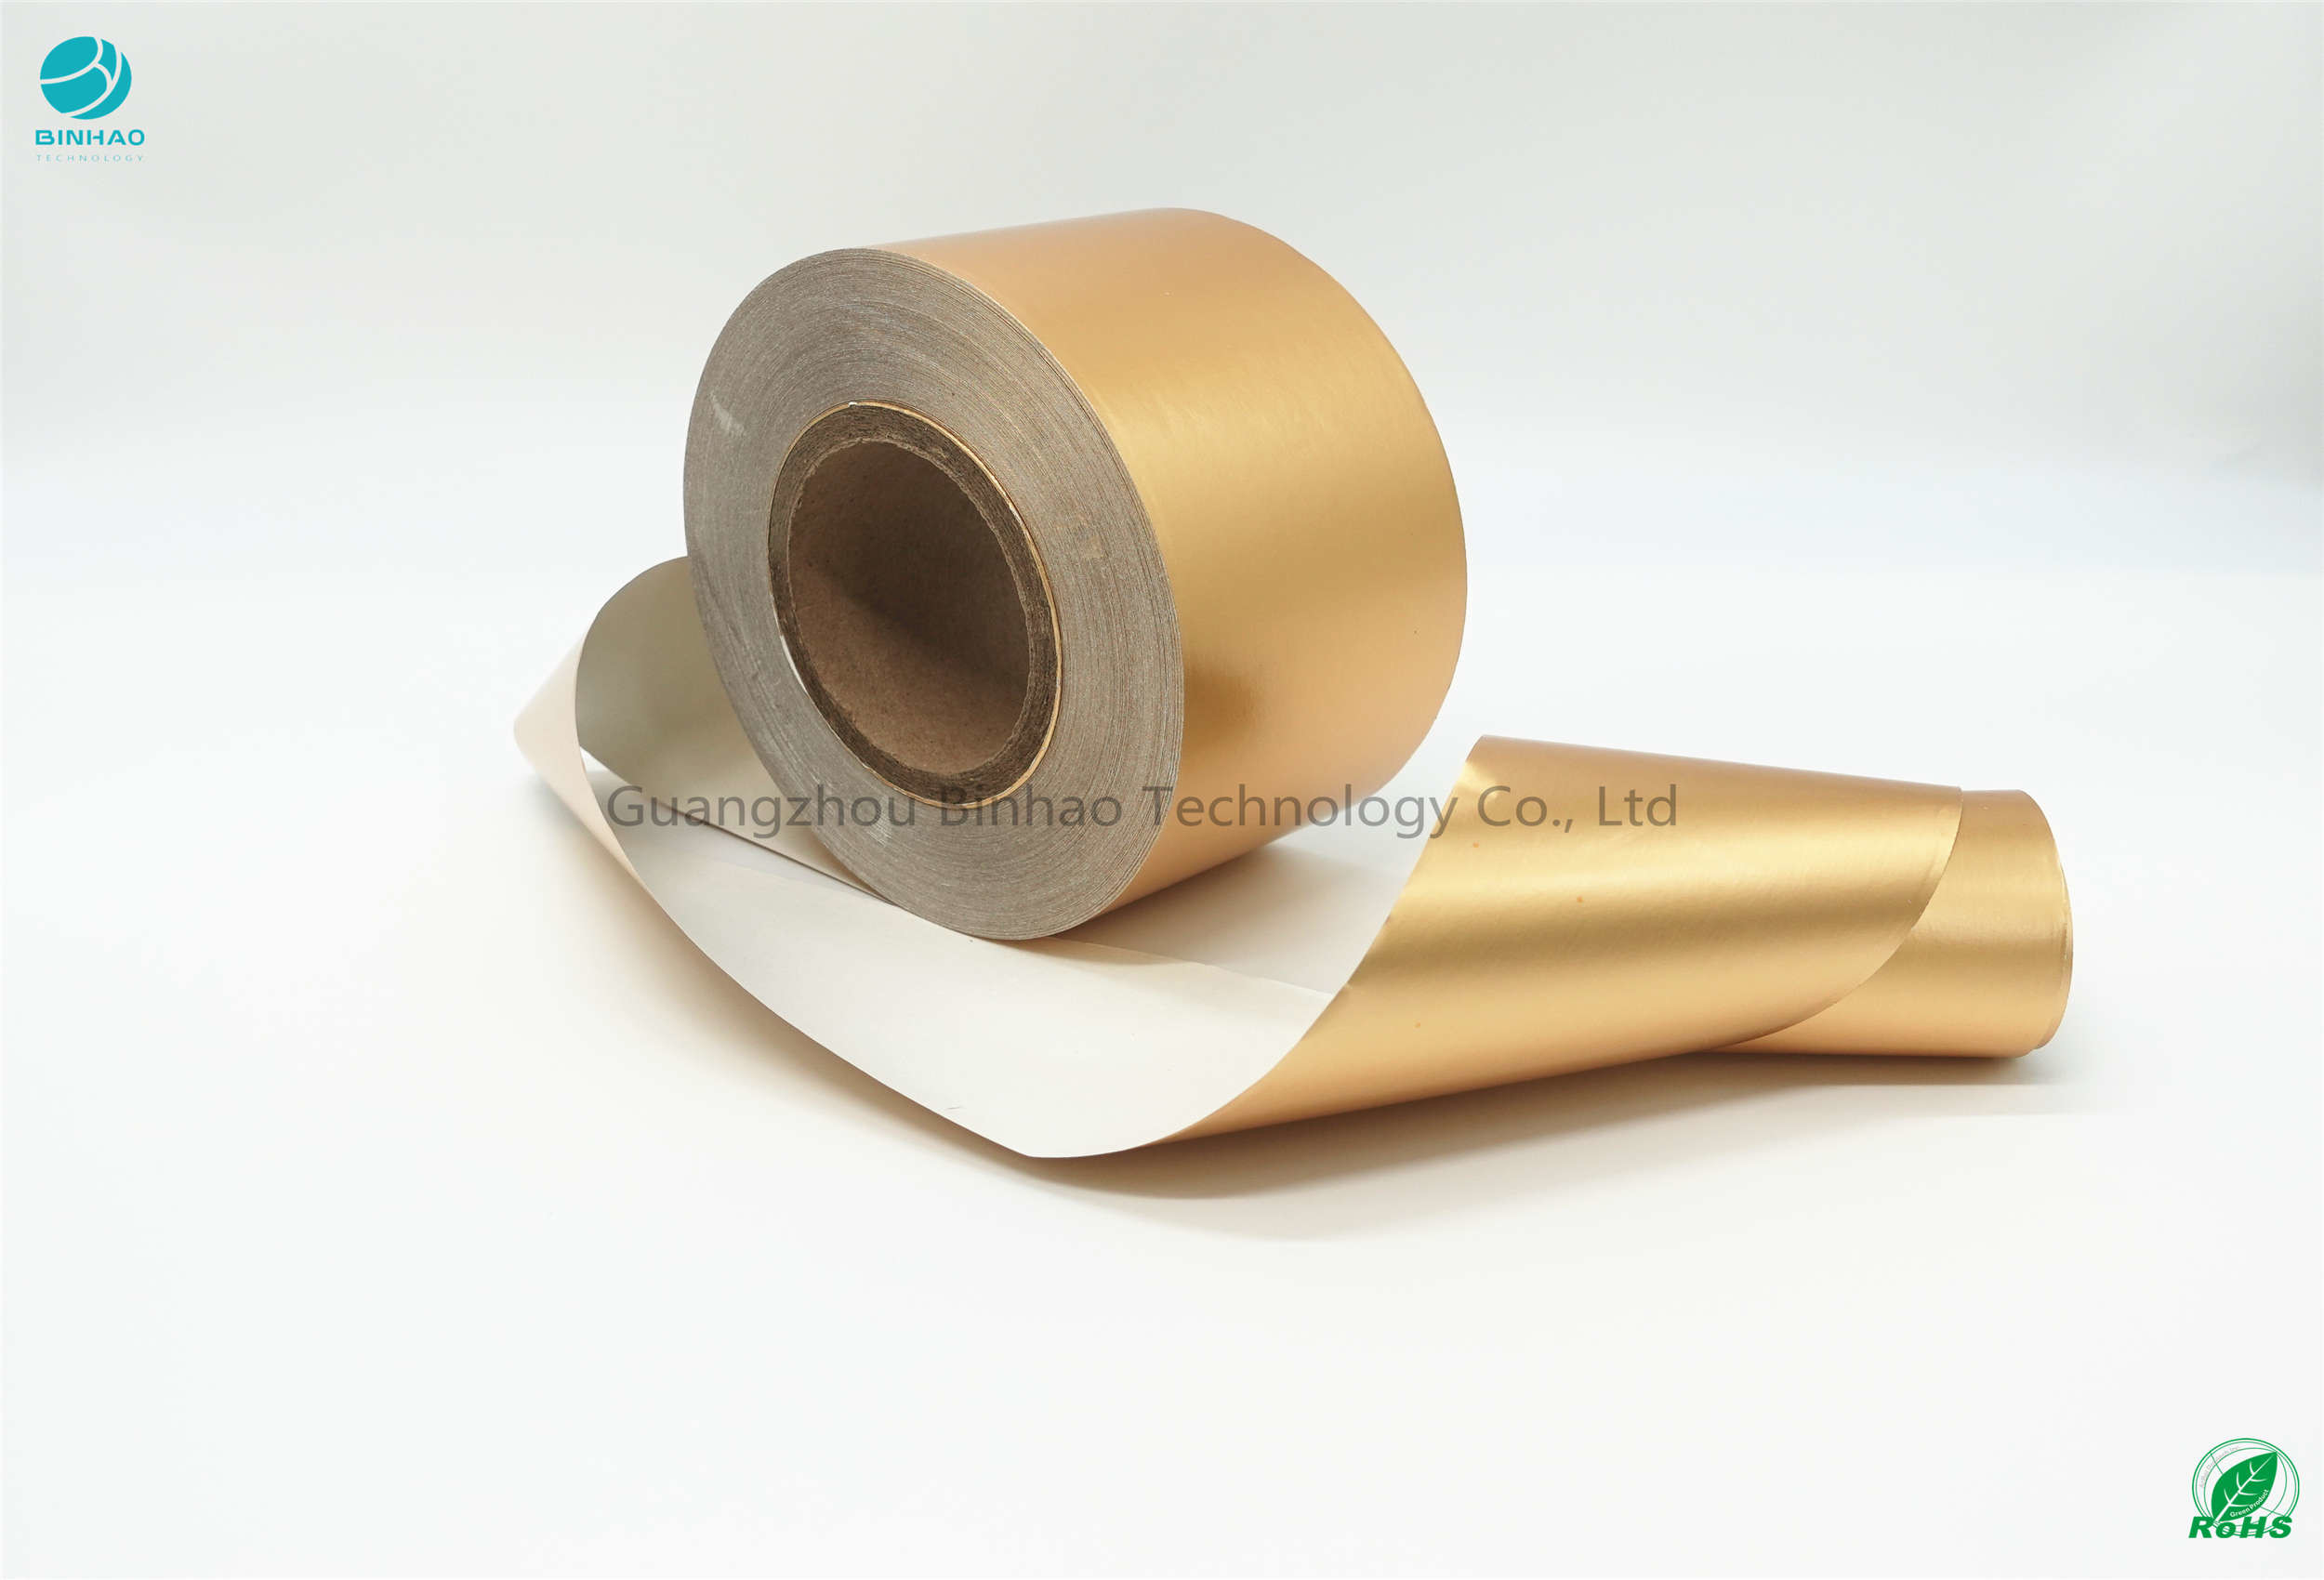 Hochfester 70g /M2 Aluminiumfolie-Papier-Goldpapiertabak der Matt2 Schicht-